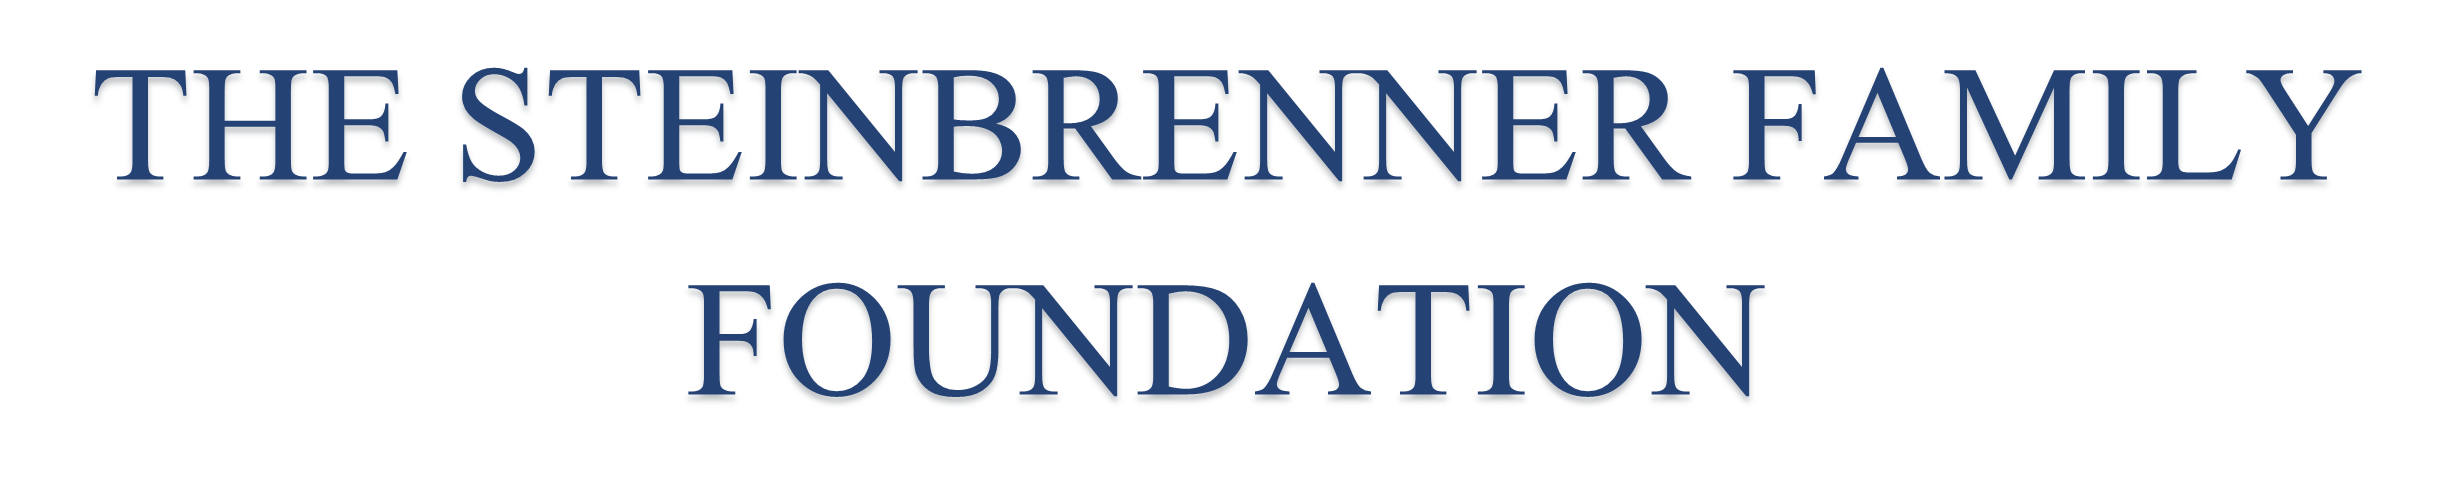 The Steinbrenner Family Foundation